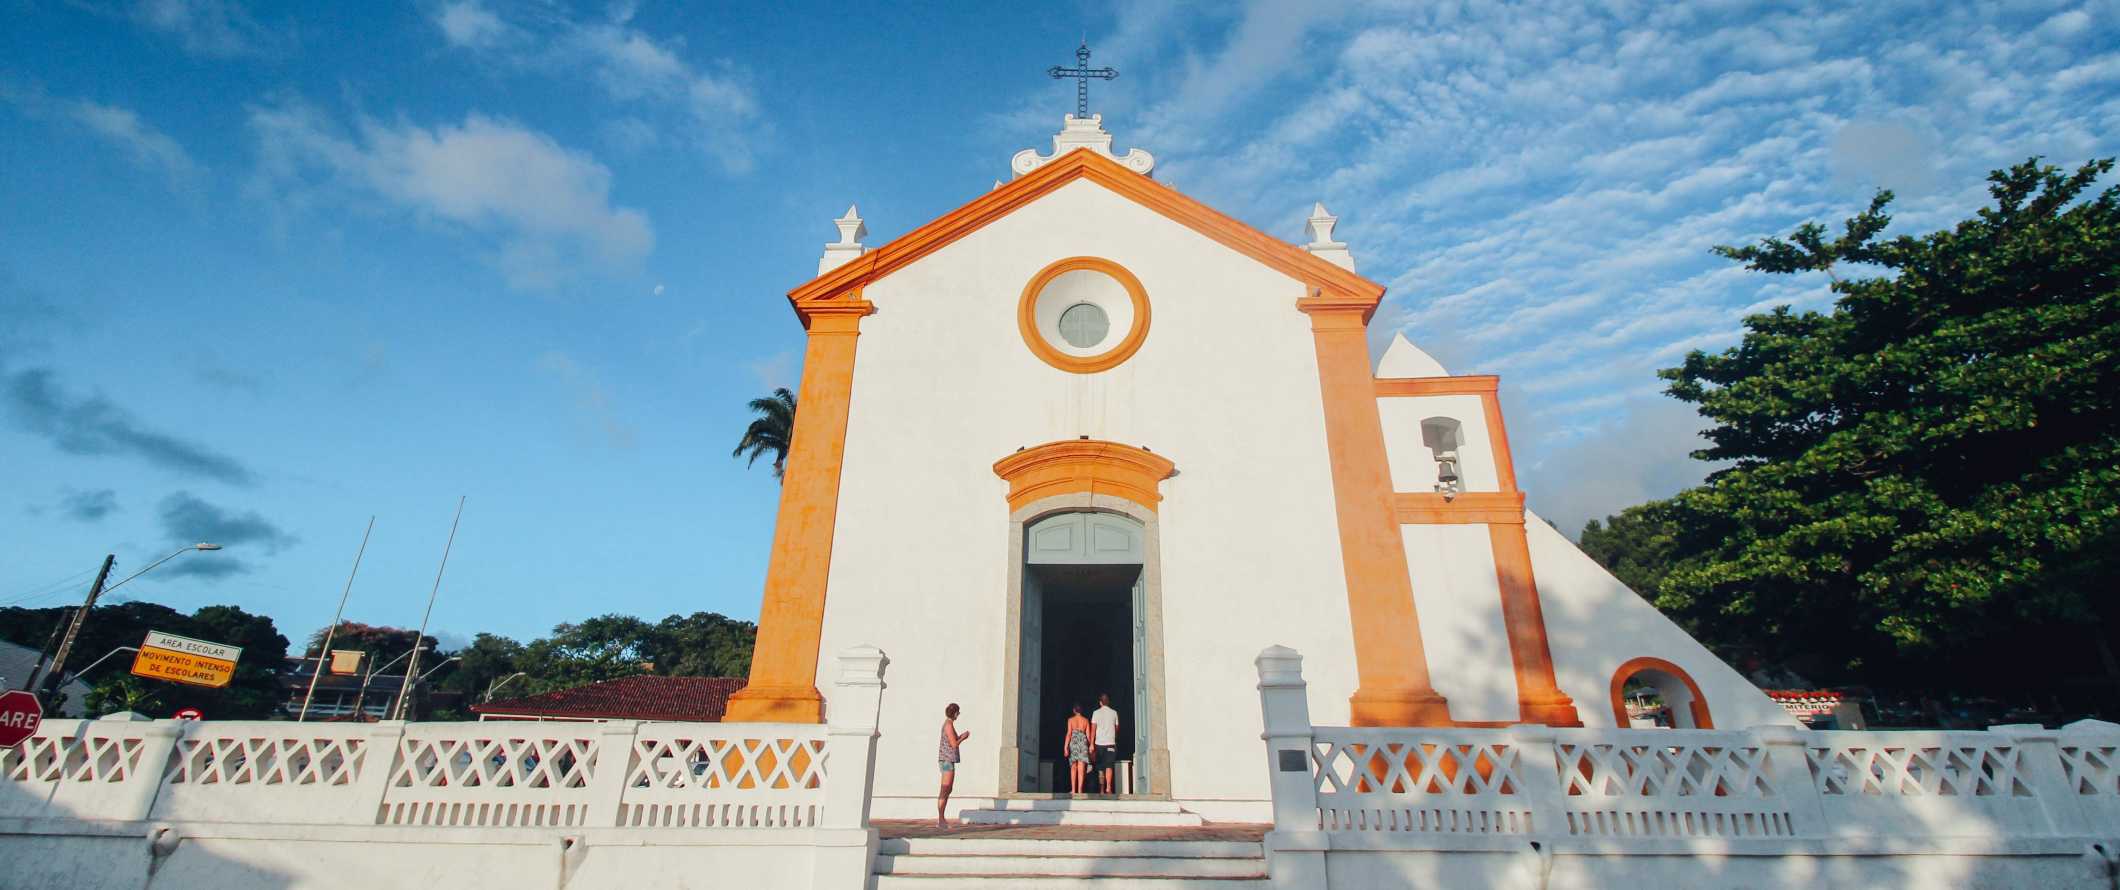 Igreja colonial branca em neve com acabamento laranja brilhante em Florinopolis, Brasil